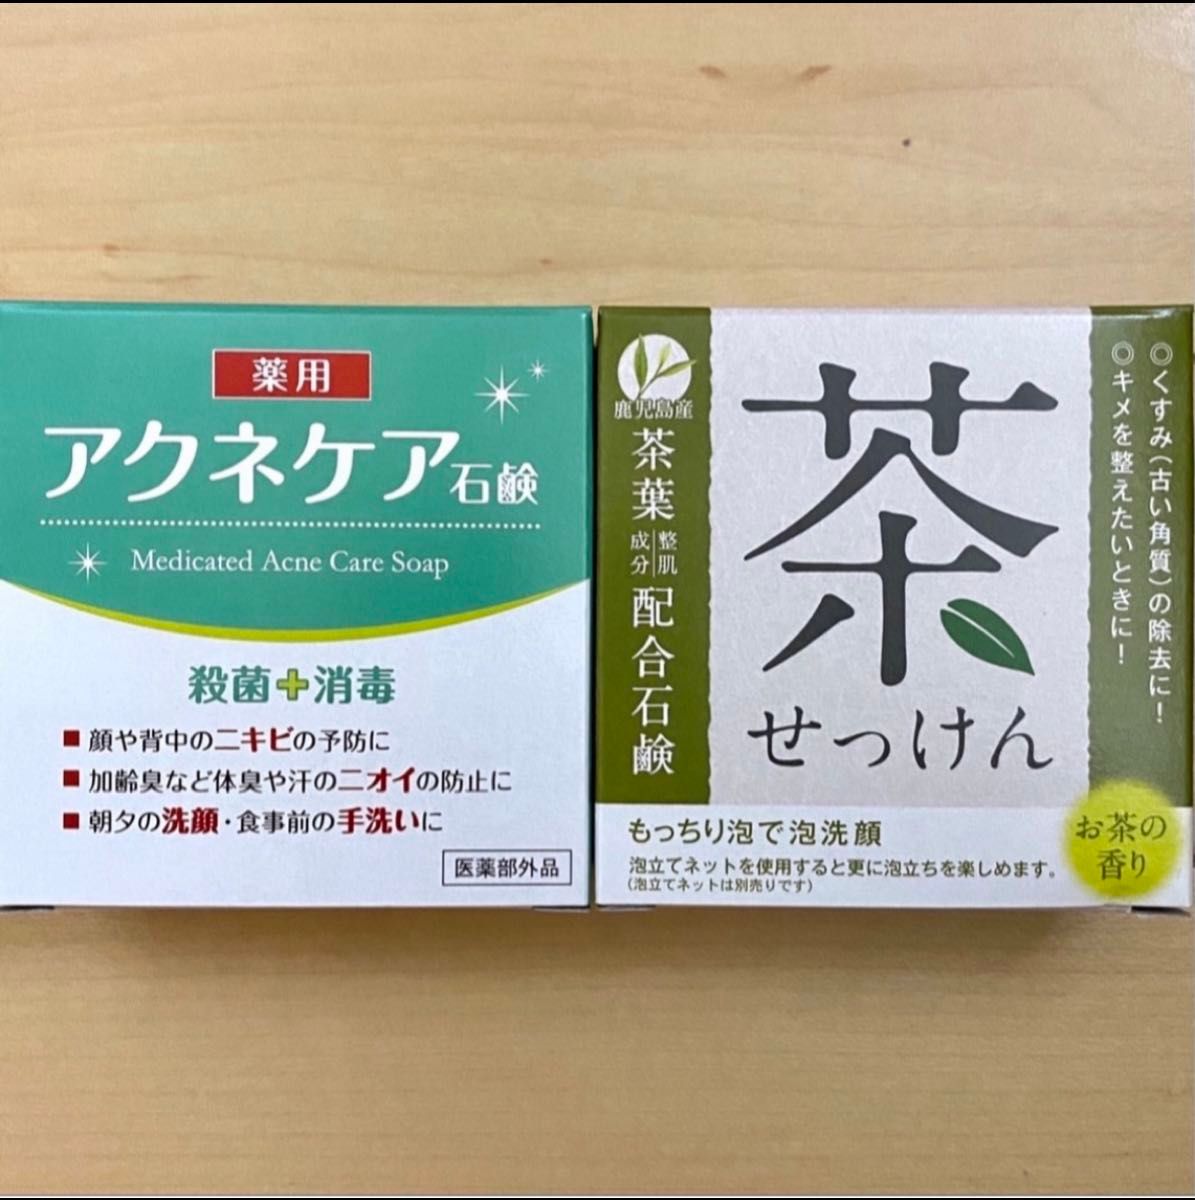 薬用アクネケア&茶葉配合石けん セット